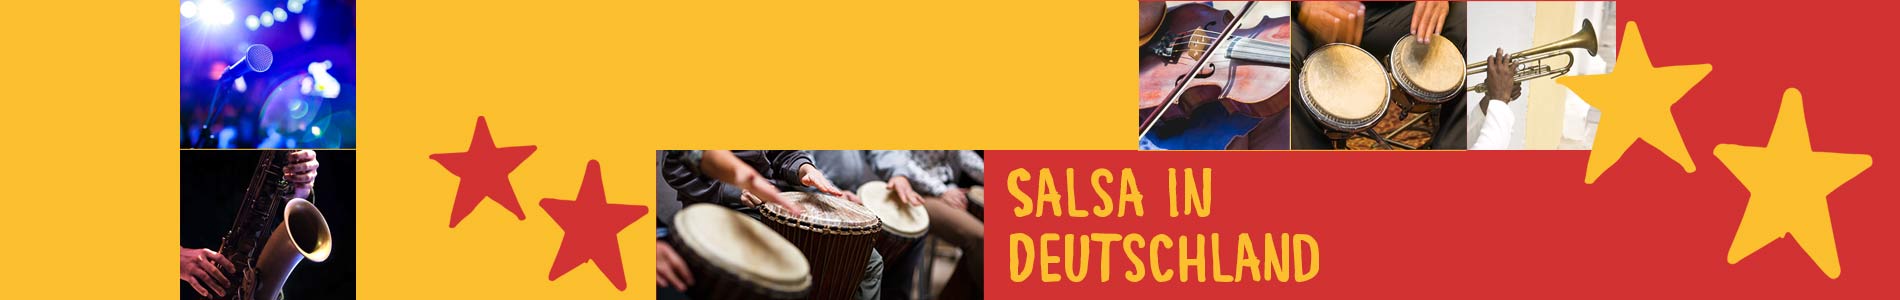 Salsa in Büsum – Salsa lernen und tanzen, Tanzkurse, Partys, Veranstaltungen